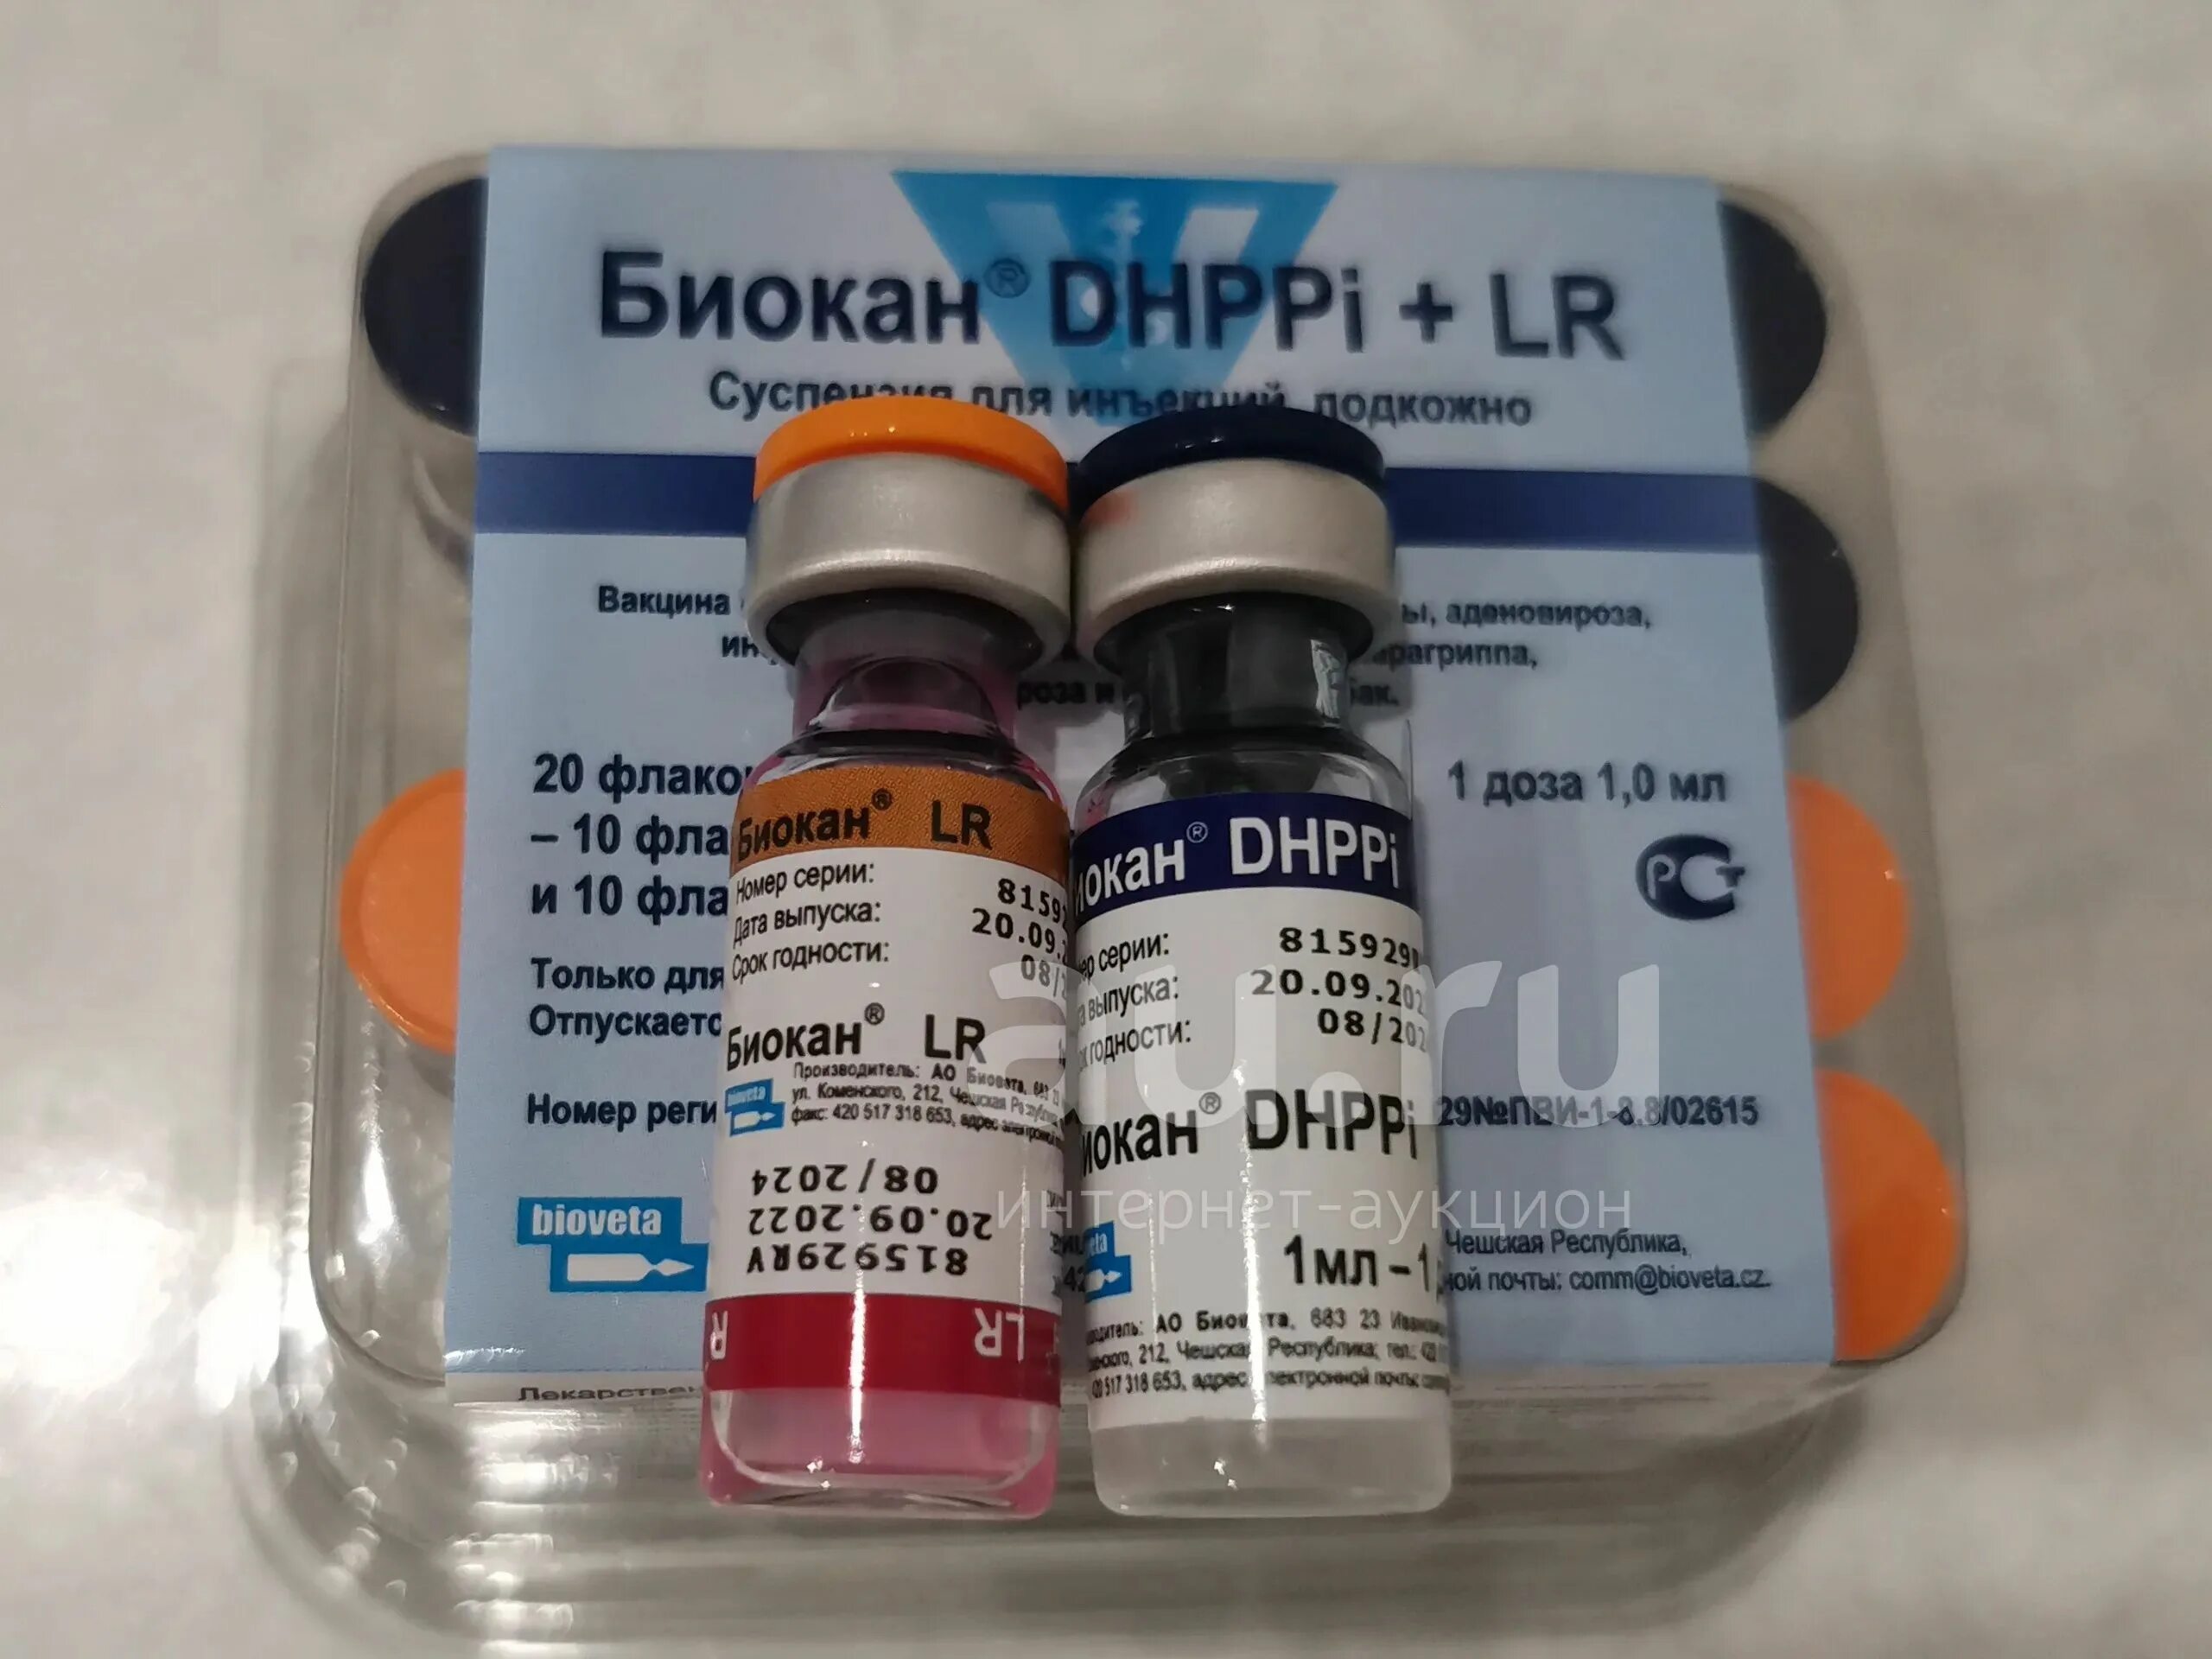 Биокан для собак производитель. Биокан DHPPI+LR. Биокан DHPPI + RL. Биокан вакцина для собак. Биокан DHPPI вакцина для собак.